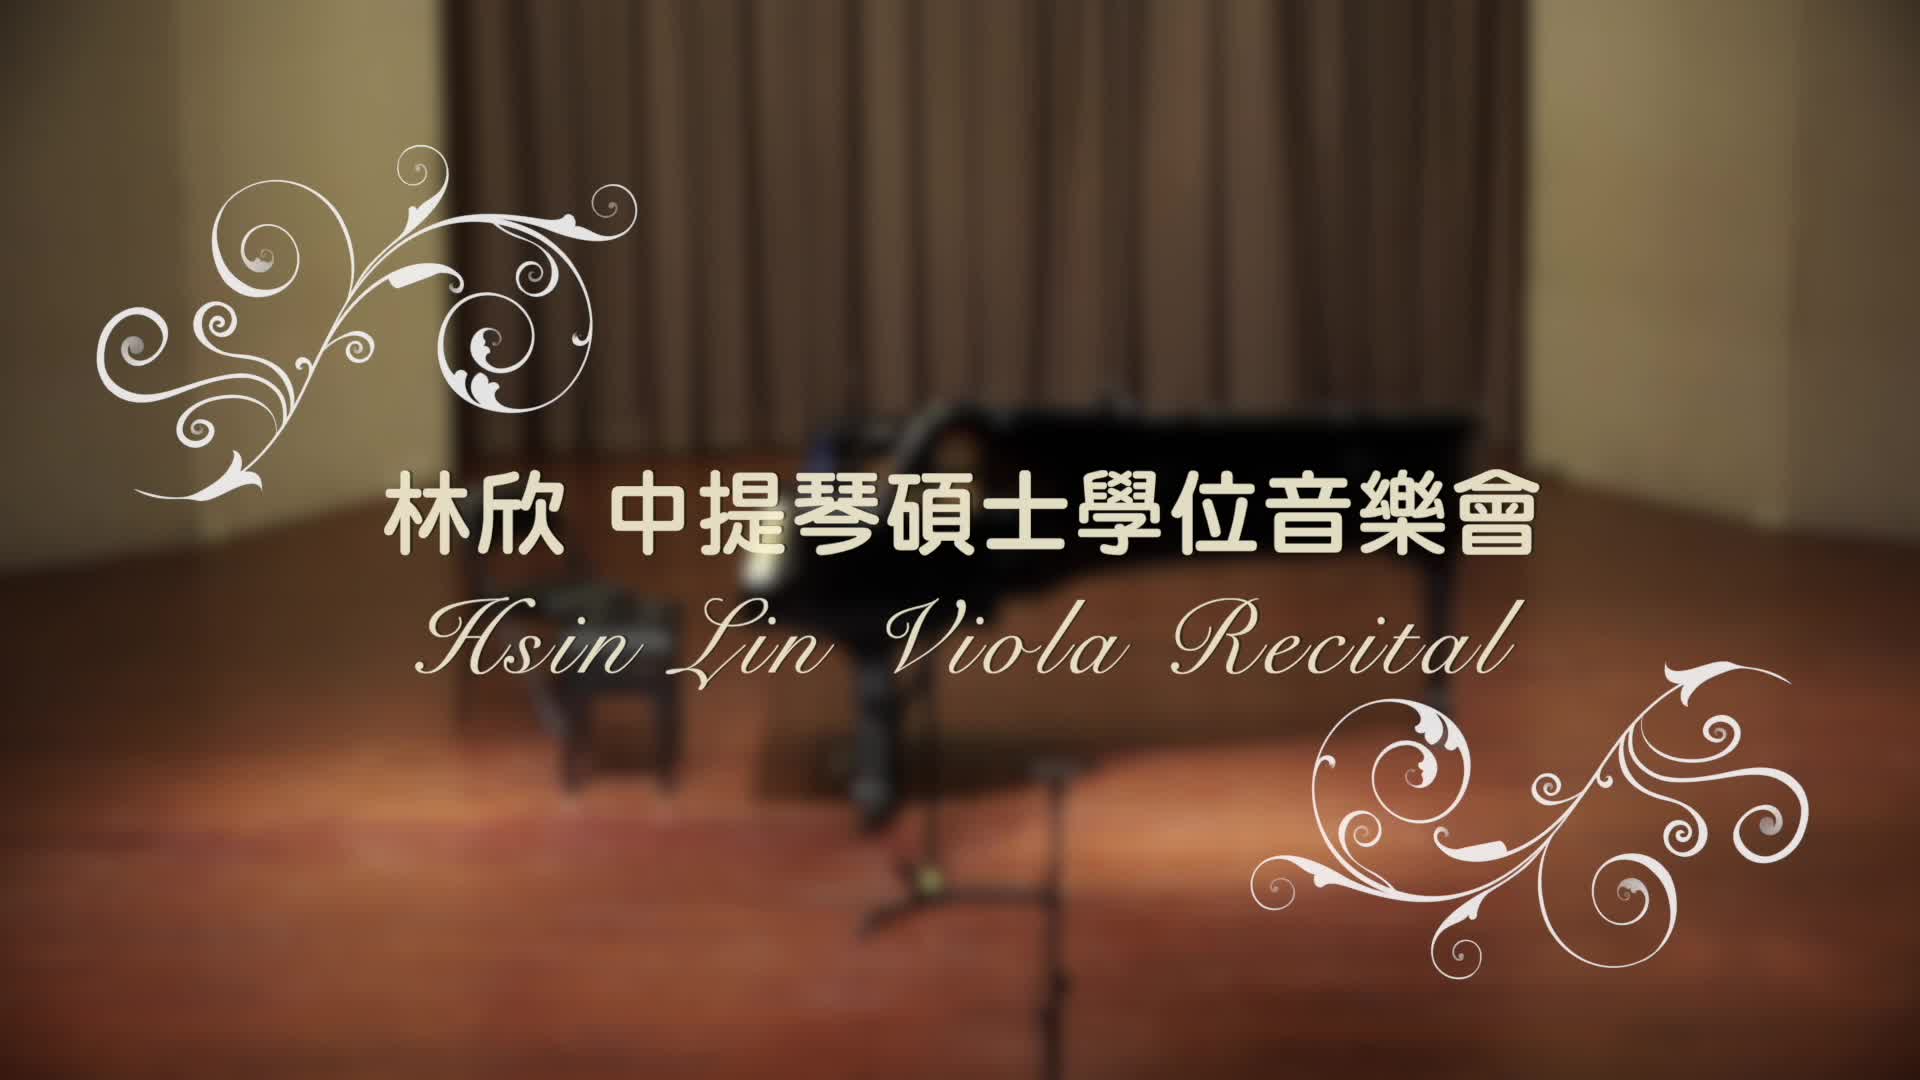 林欣中提琴畢業獨奏會(下)示意圖